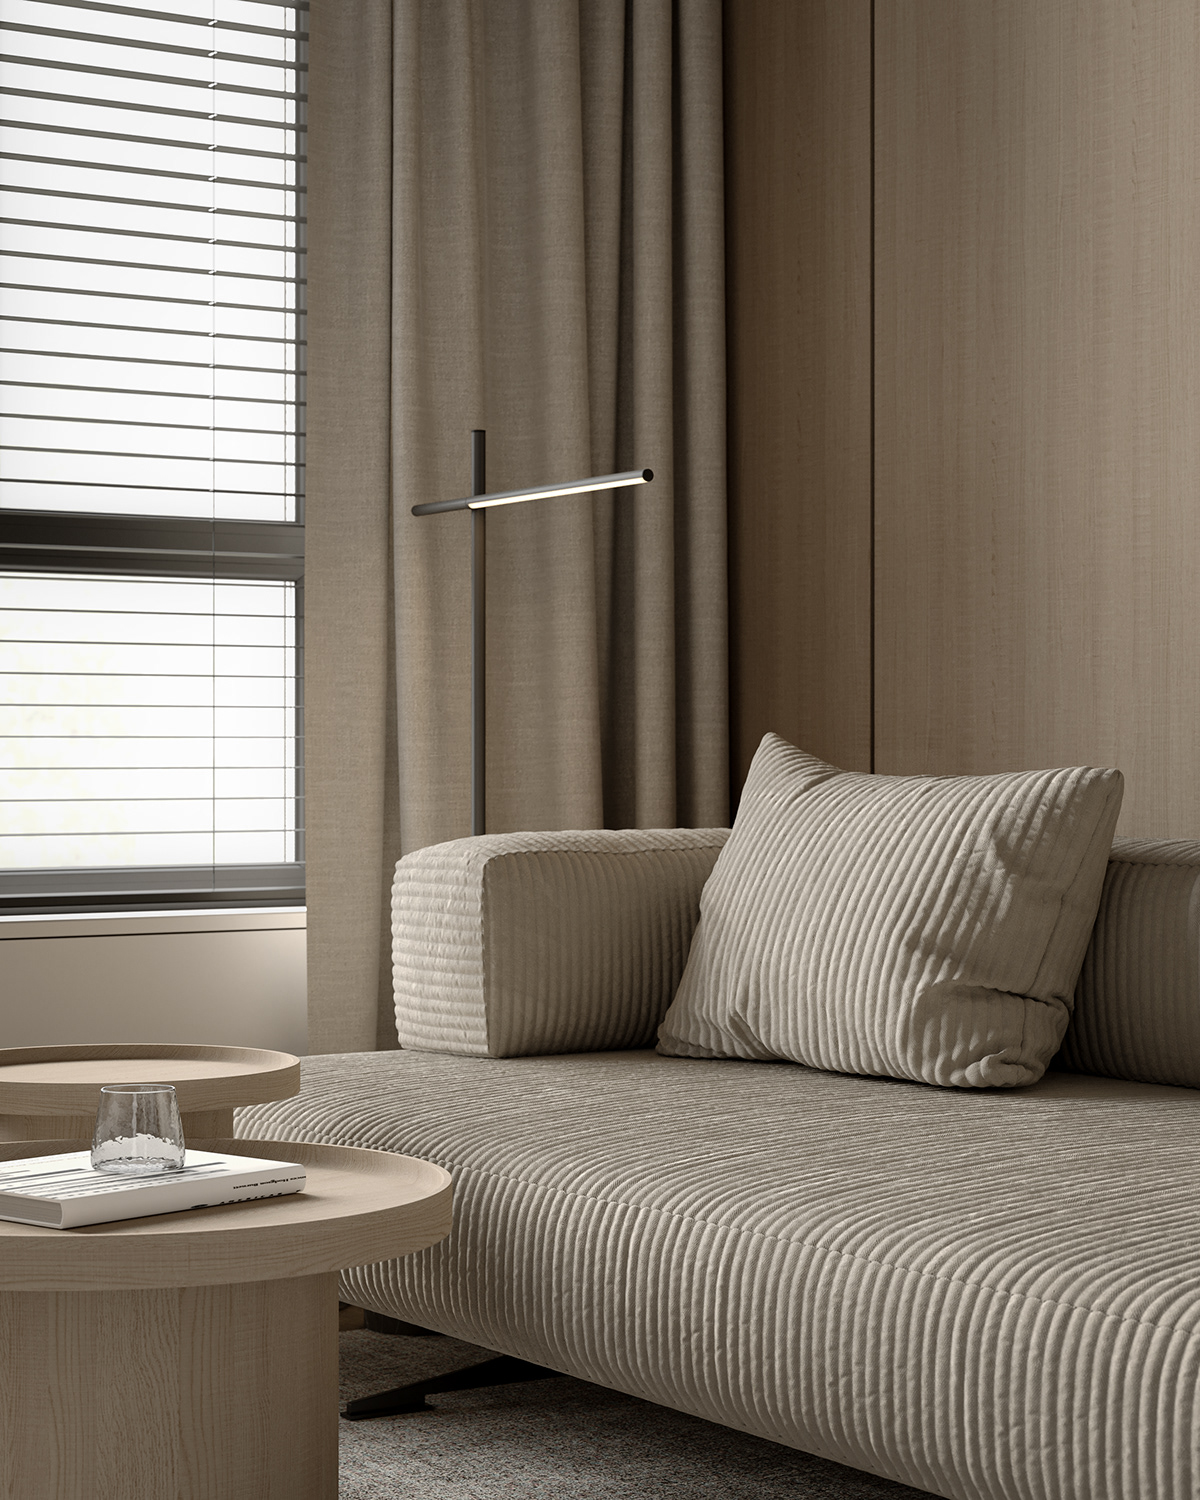 interior design  Interior design architecture 3ds max visualization CGI cozy interior Minimalism minimaldesign